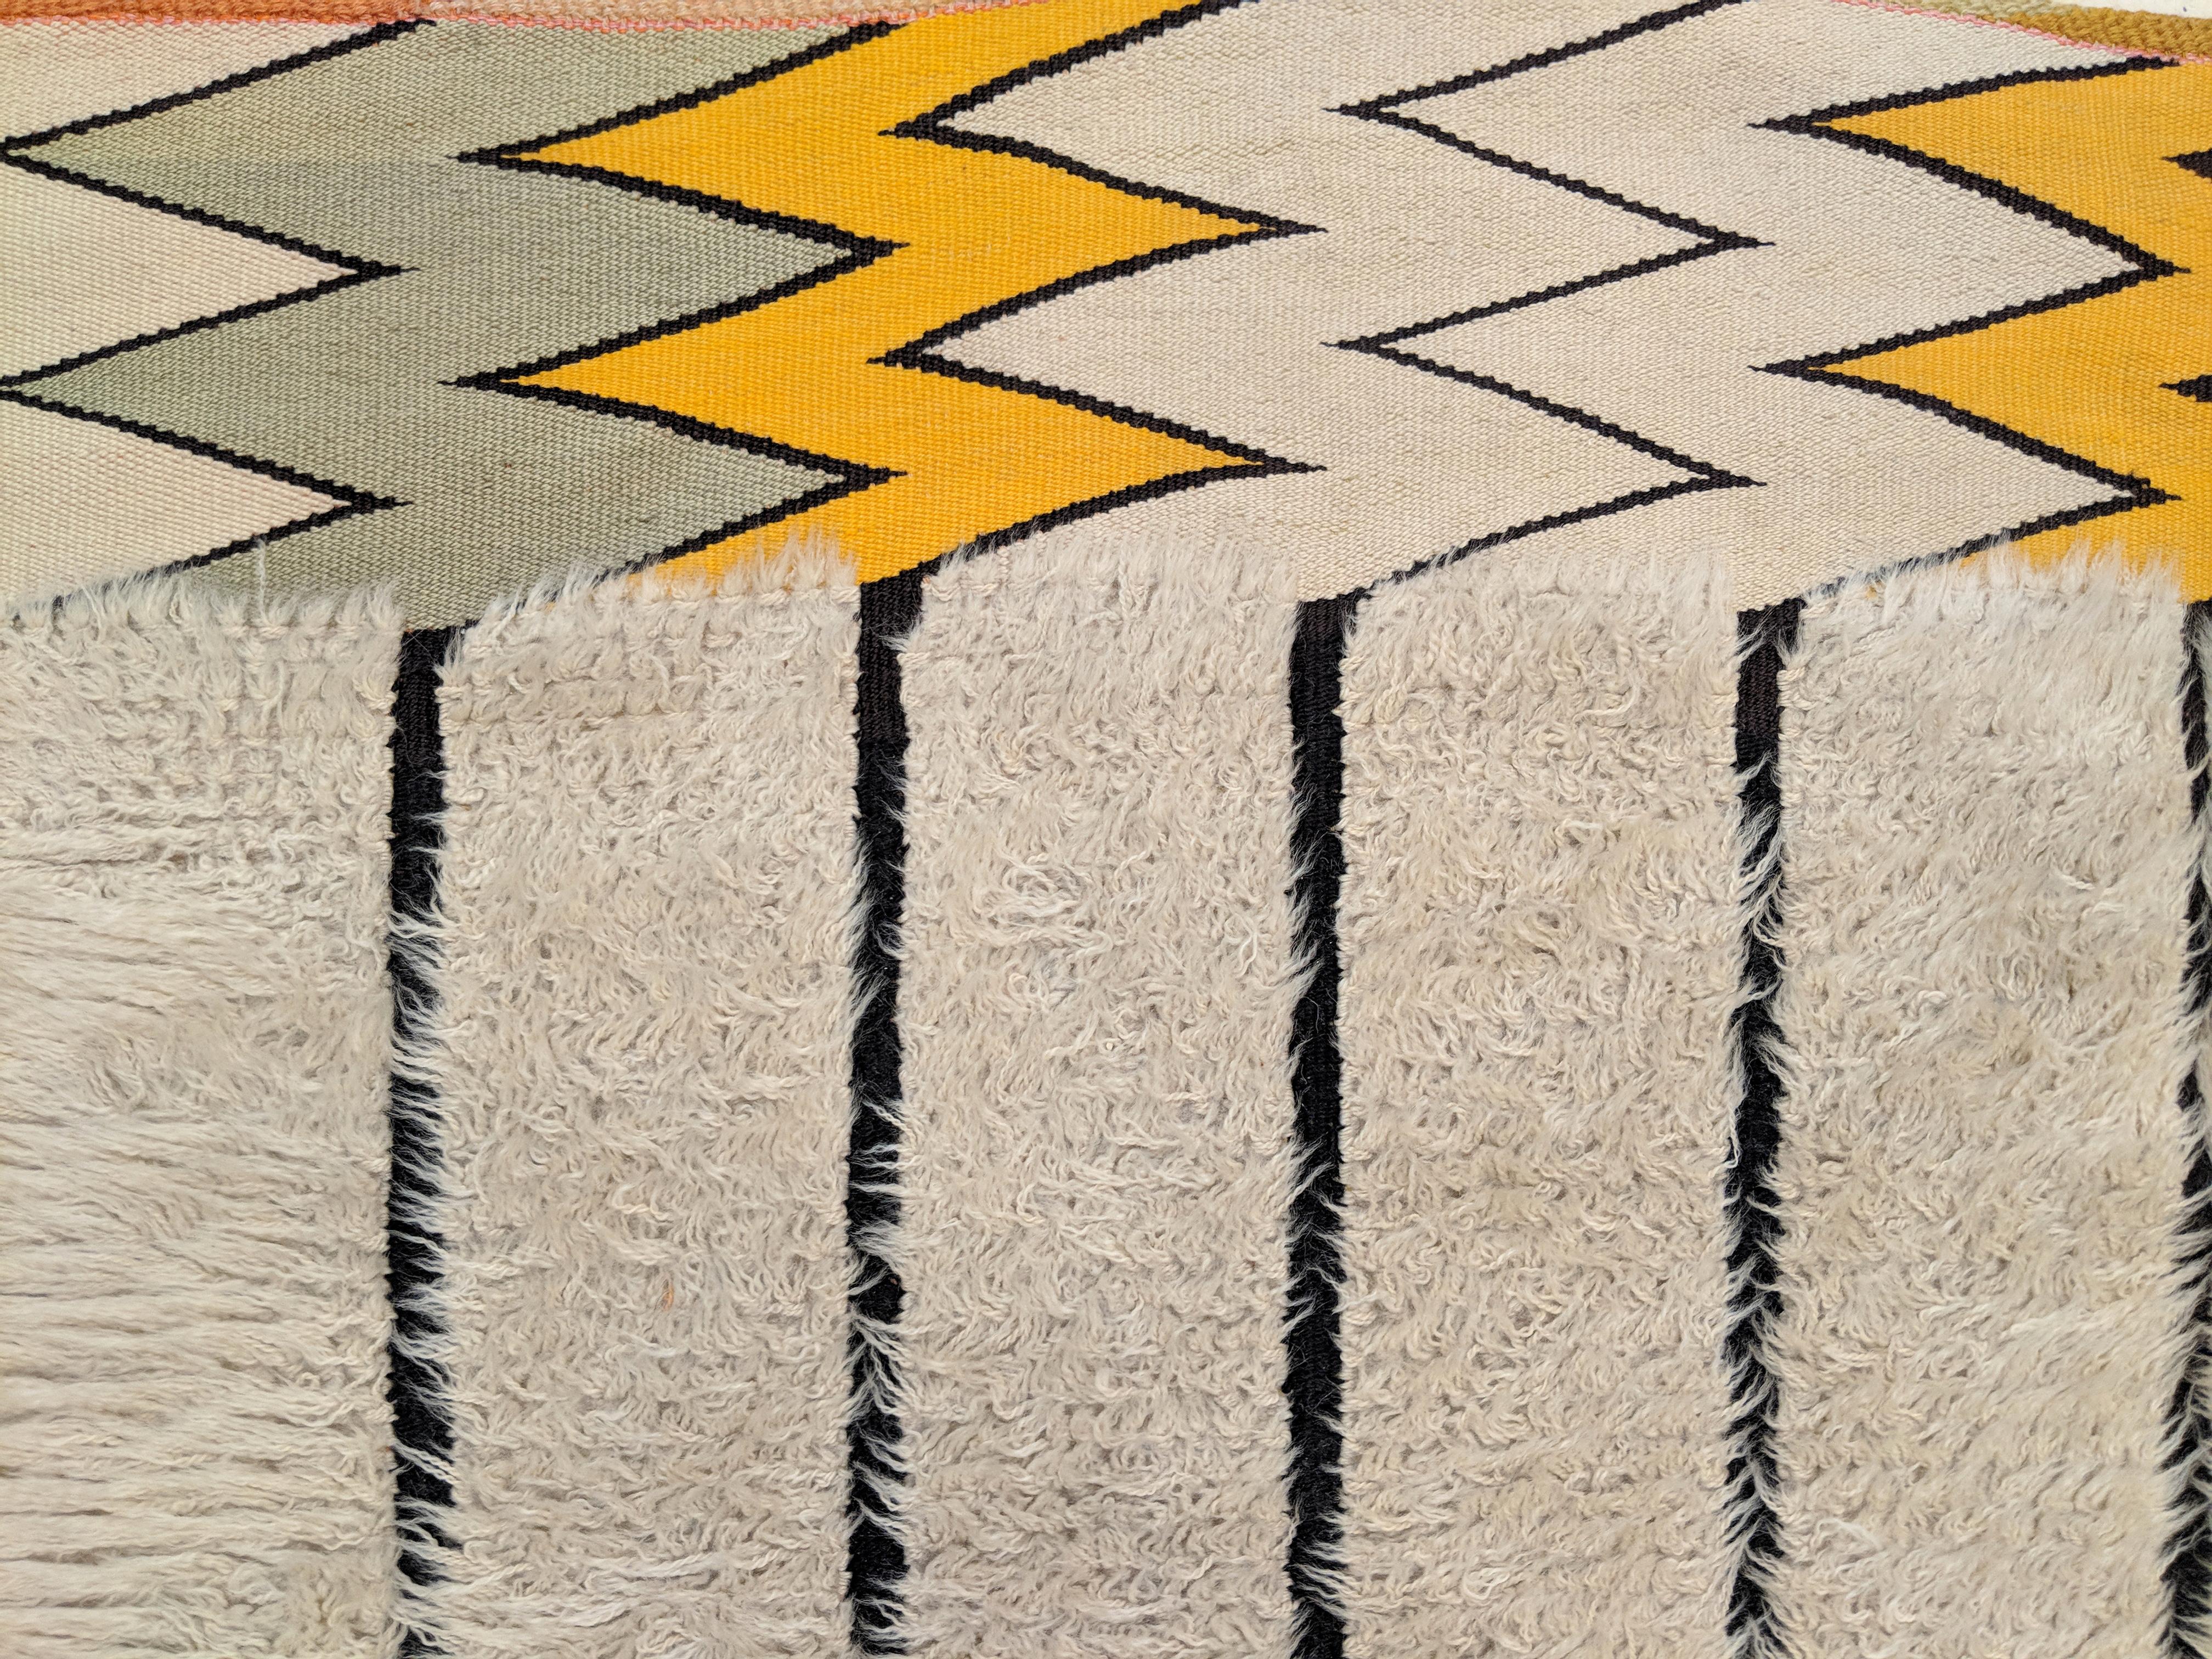 Ein sehr ungewöhnlicher schwedischer Florteppich, der in Farbe und Design an die Berberteppiche von Beni Ouarain erinnert, was darauf hindeutet, dass marokkanische Teppiche schon früh das Design der skandinavischen Moderne beeinflusst haben. Hier